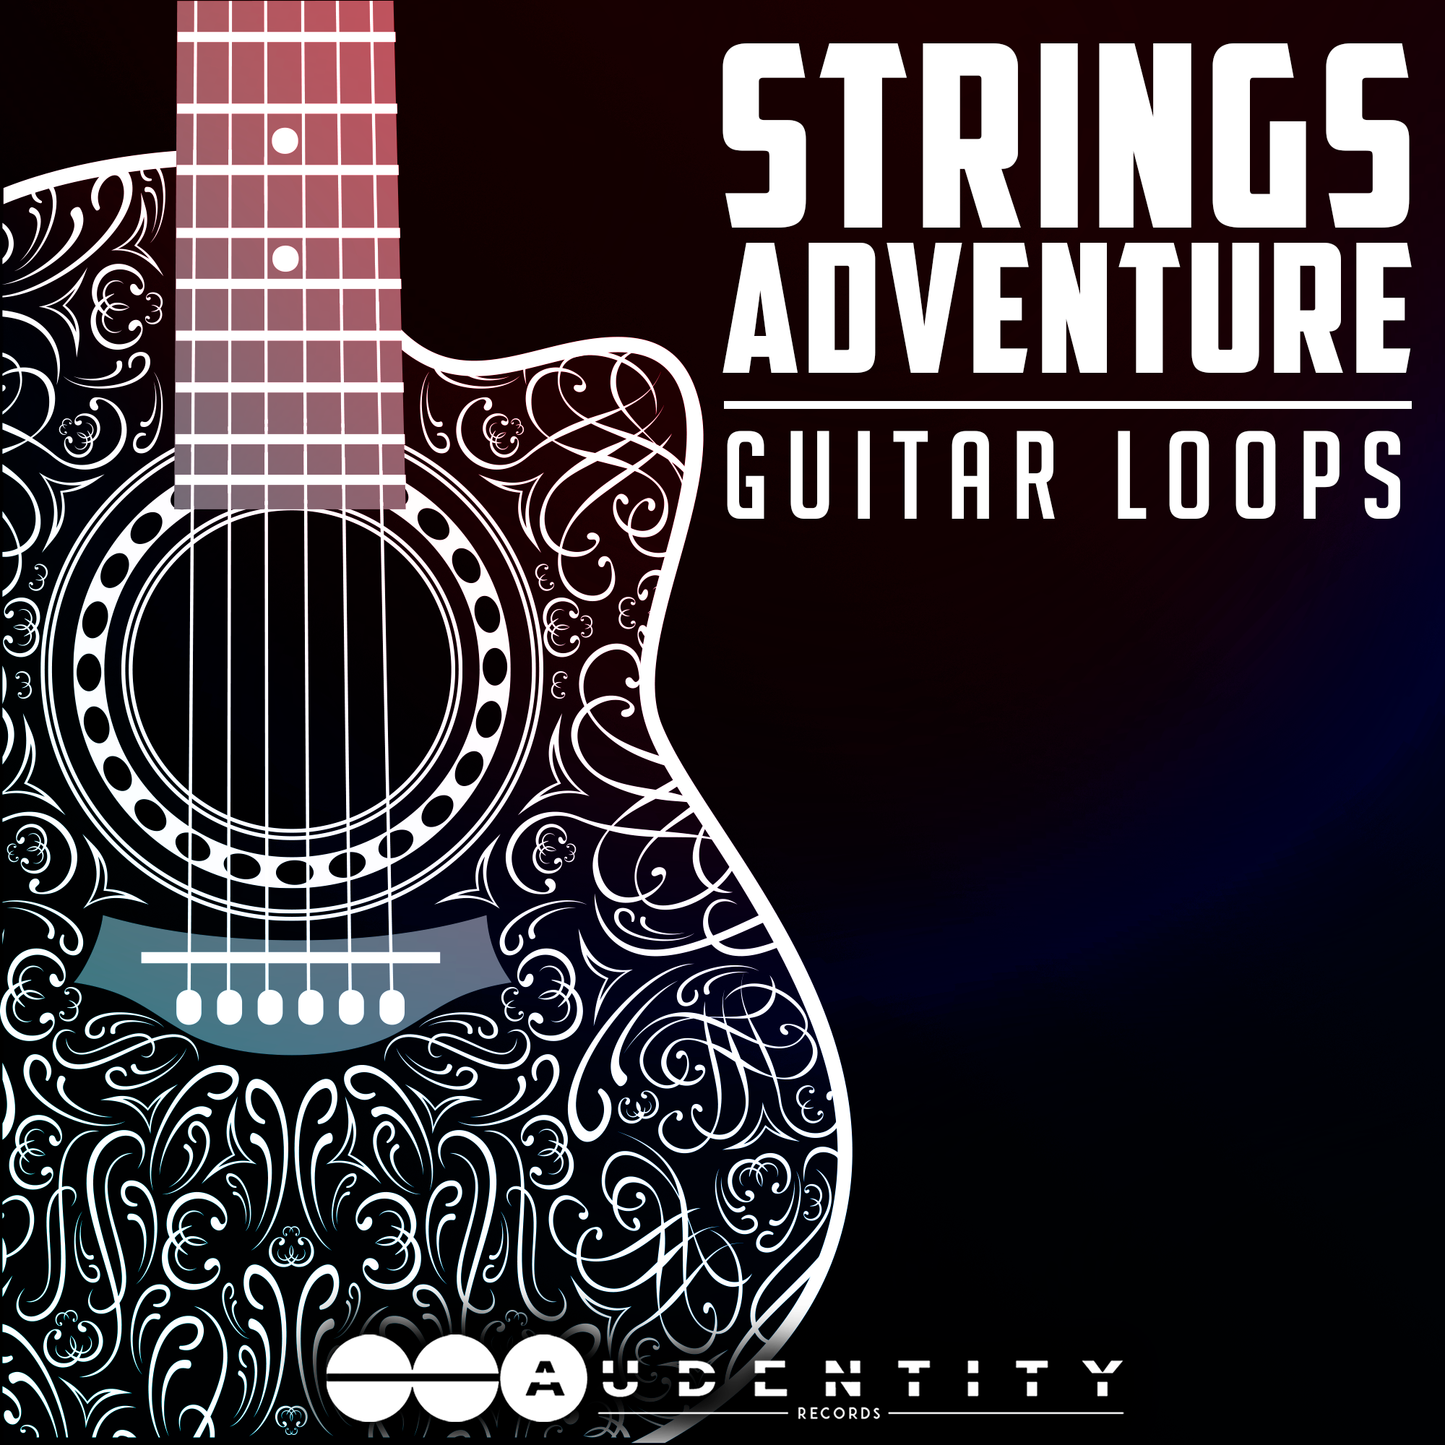 Strings Adventure